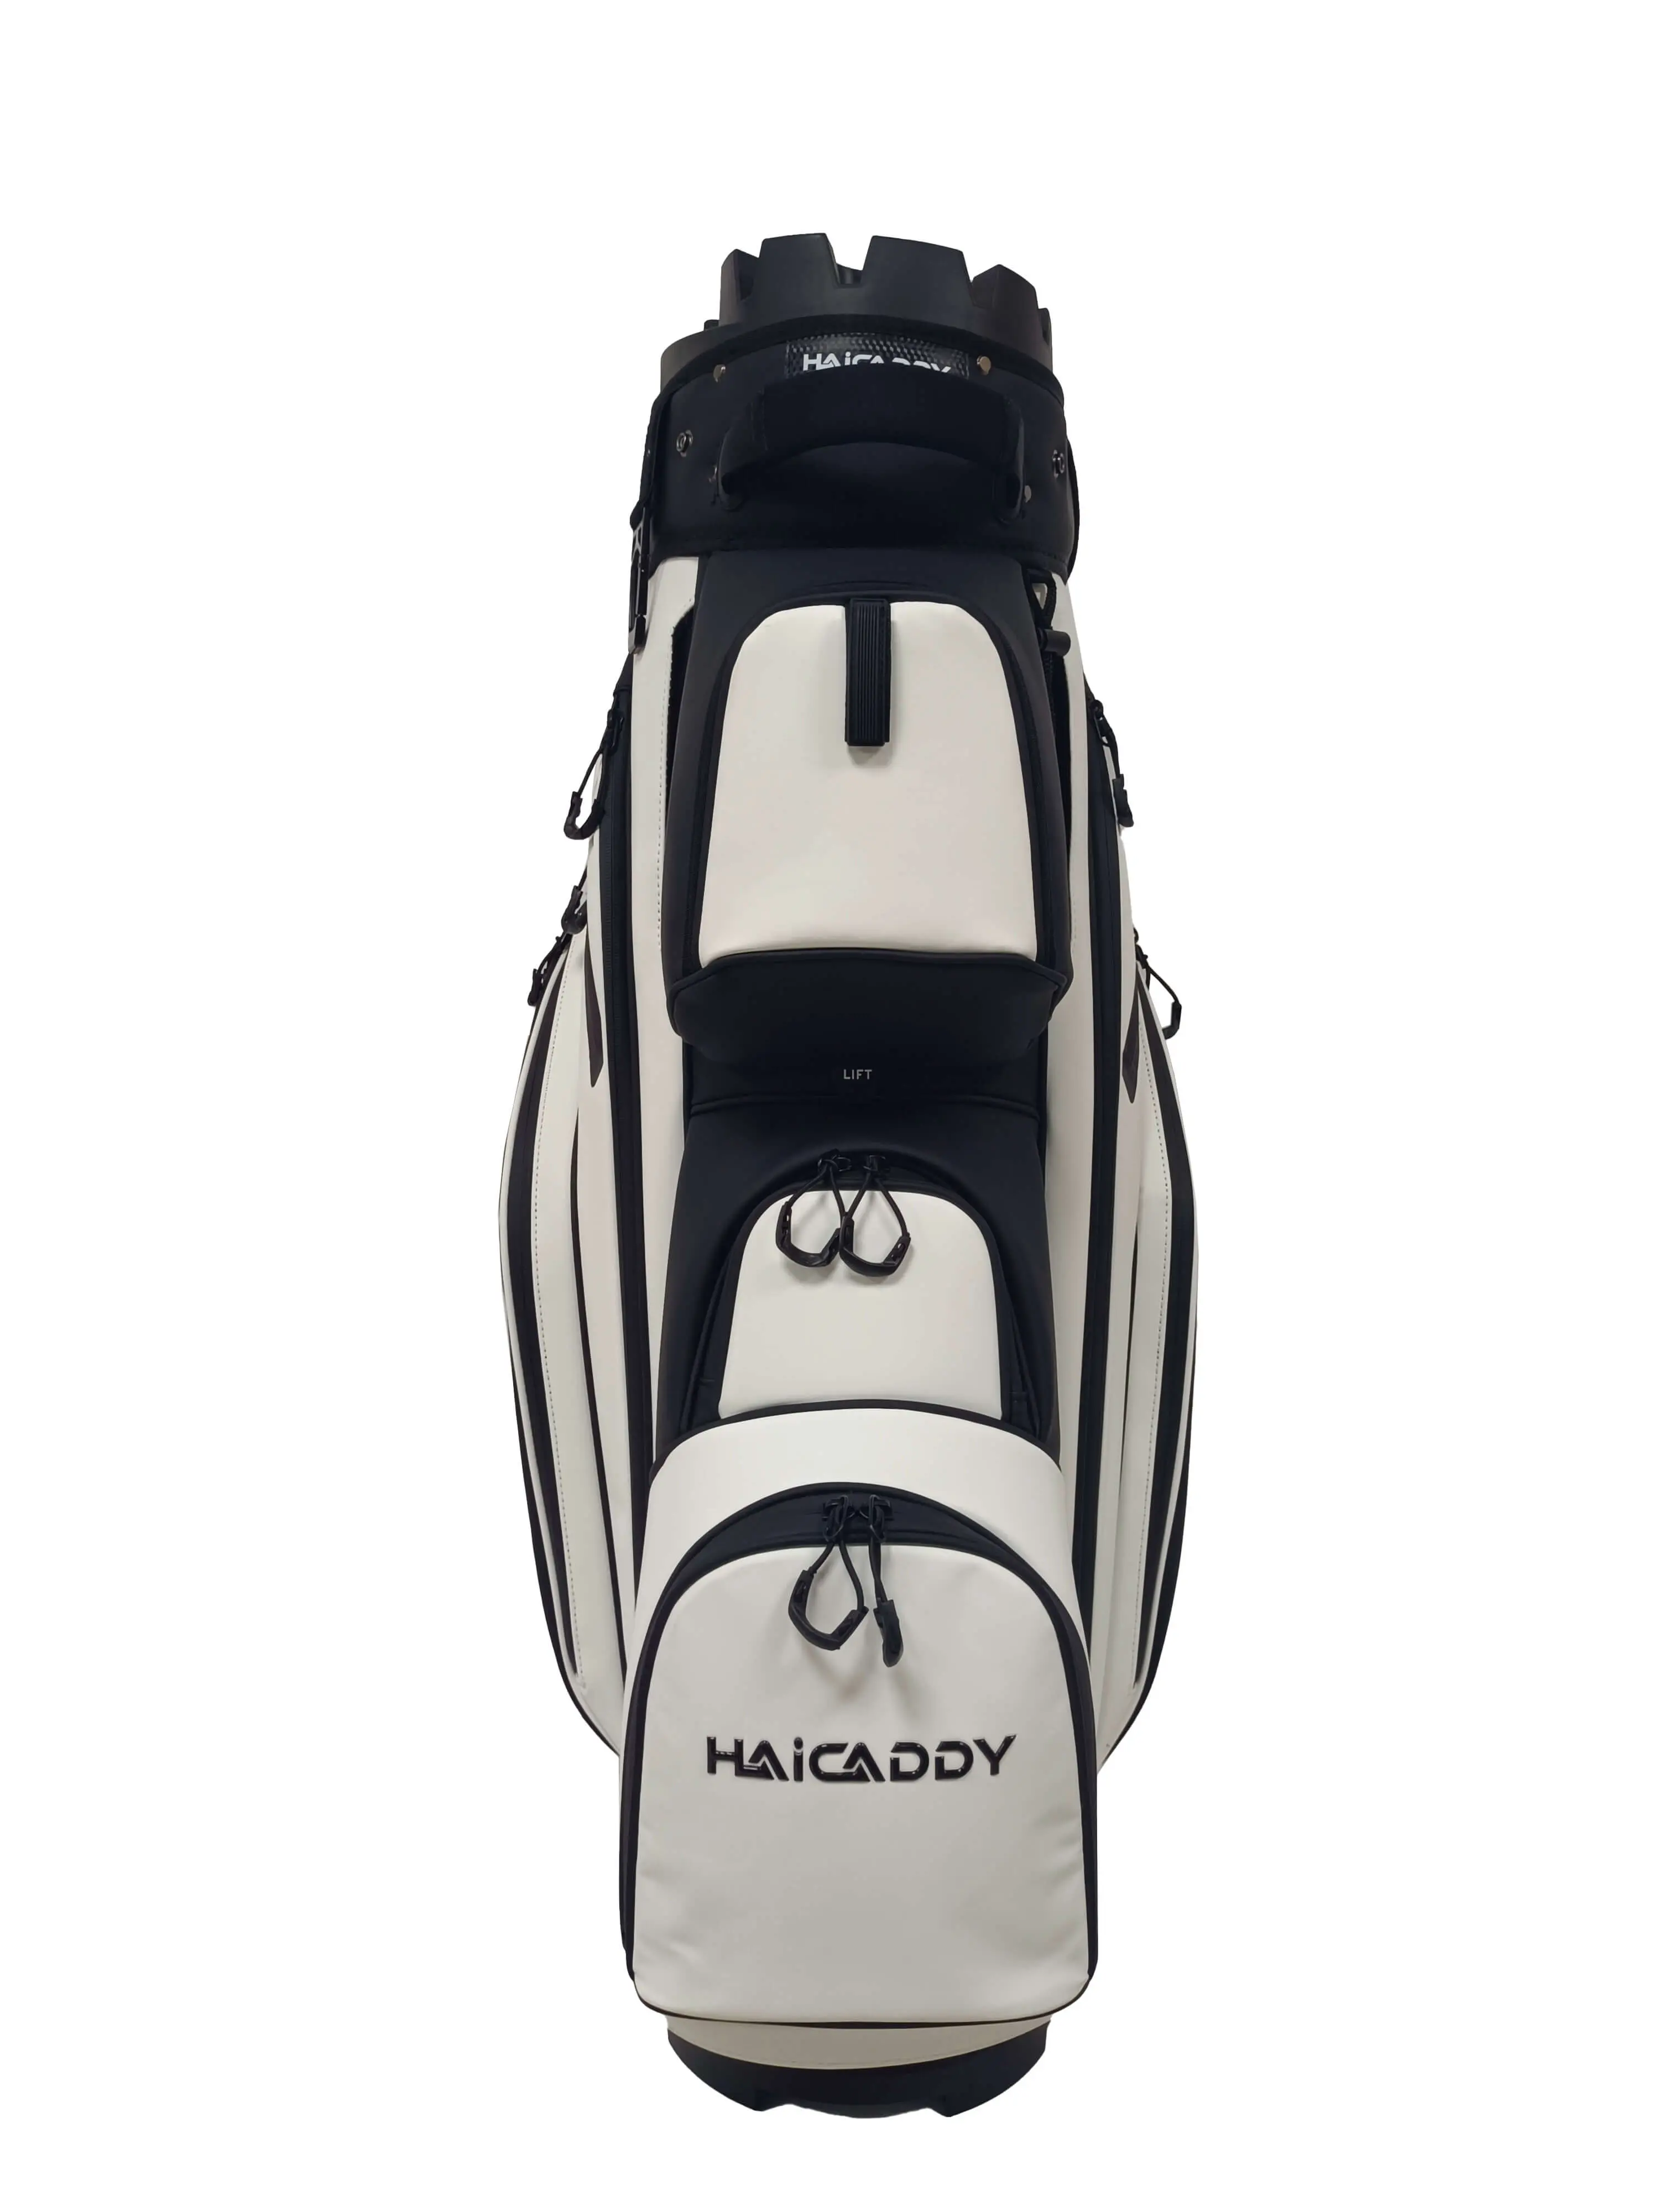 VORVERKAUF Haicaddy Deluxe Organizer Golfbag mit Magnettasche